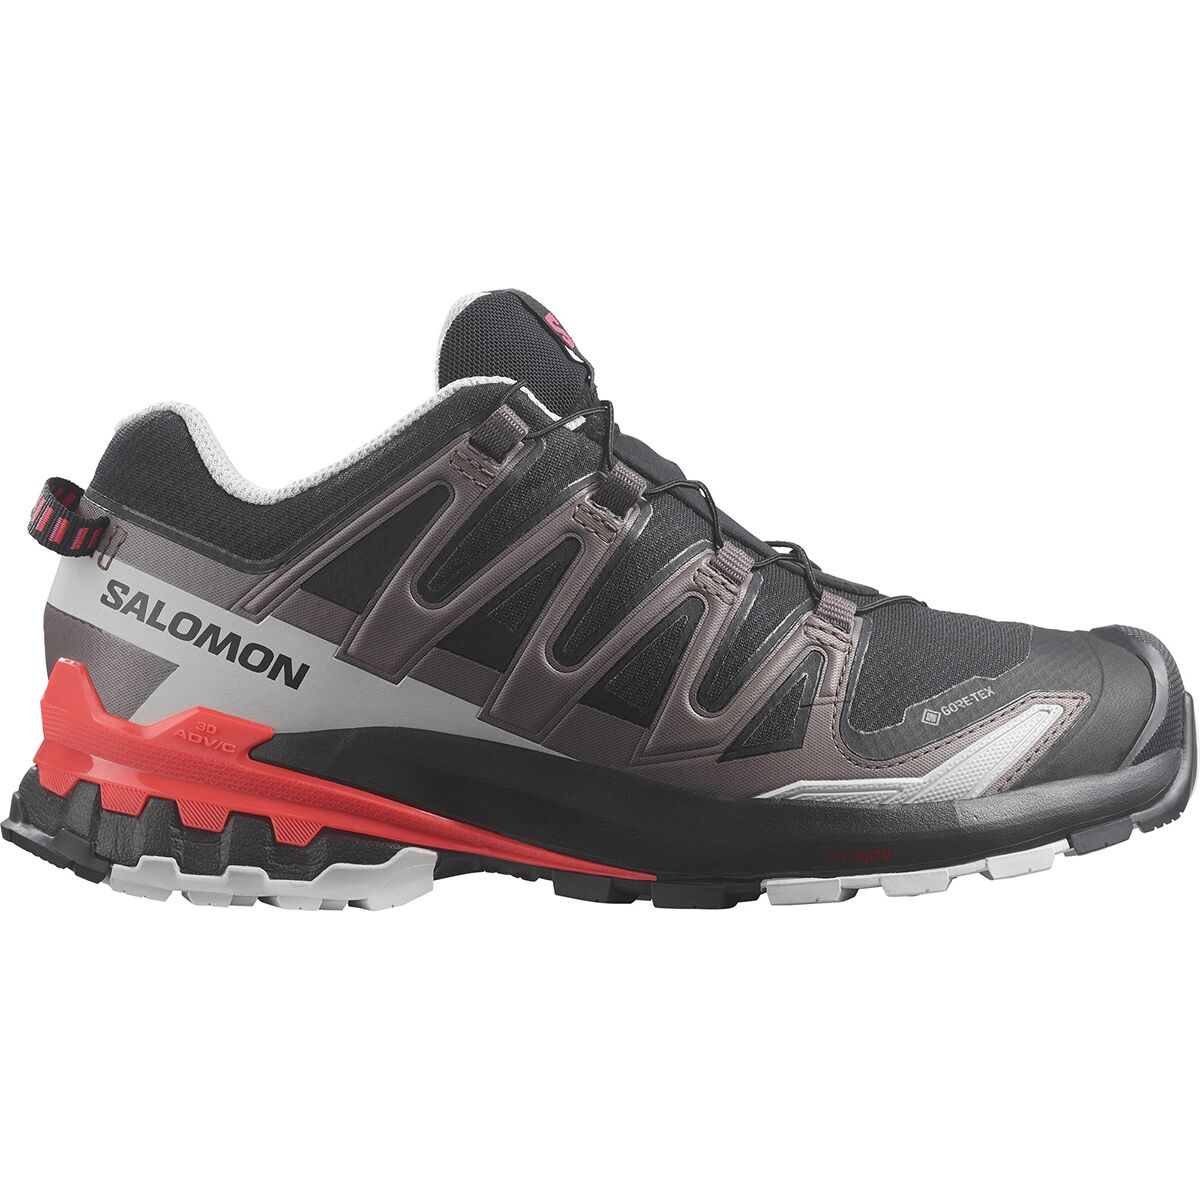 Salomon XA Pro 3D V9 GORE-TEX Trail Running Shoe - Women's Black/Pink Glo/Fiery Coral, US 7.0/UK 5.5